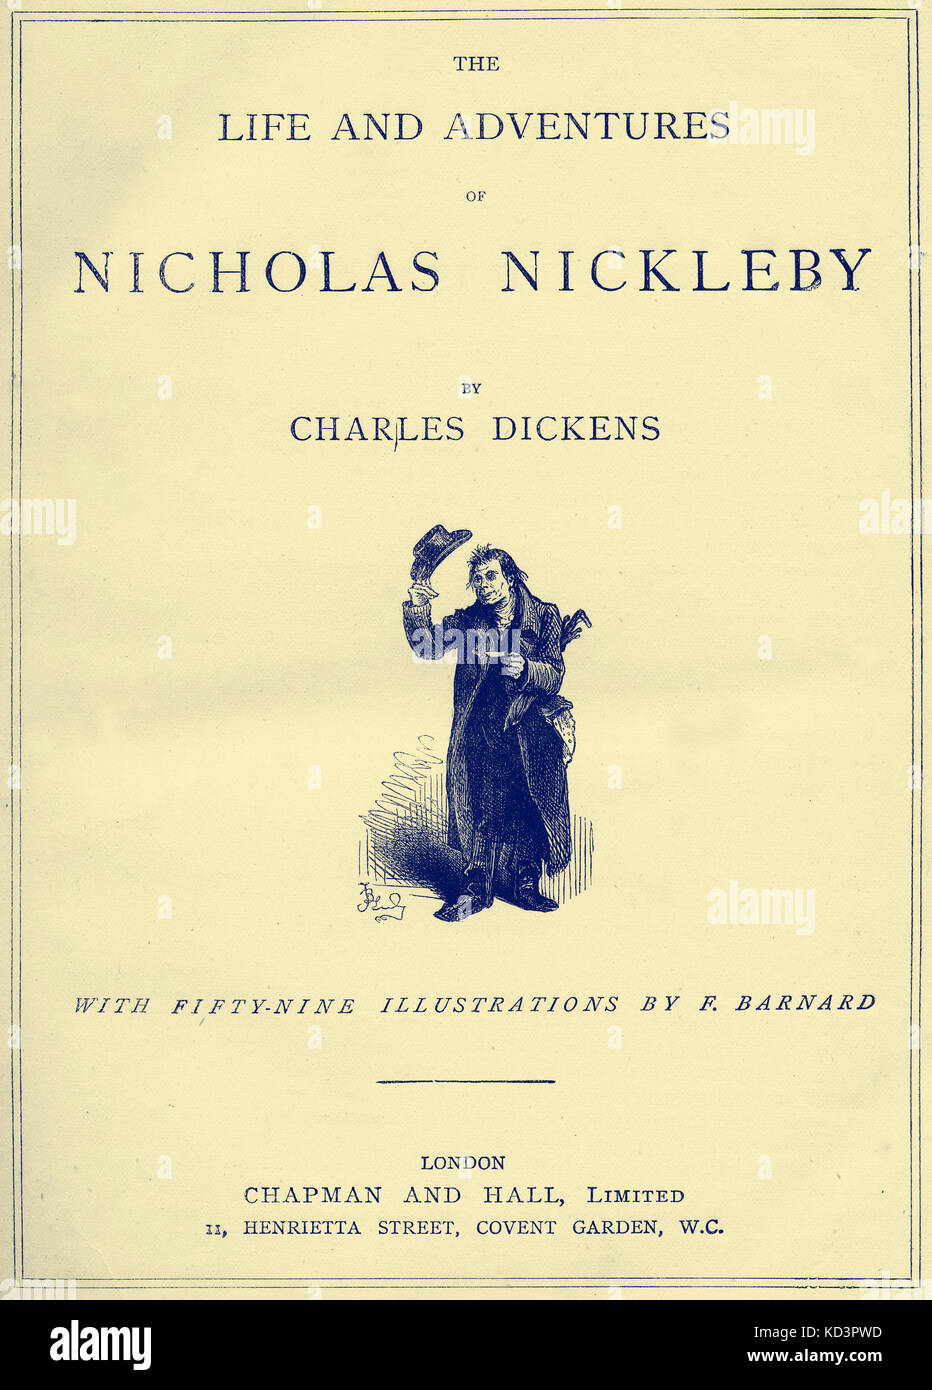 The Life & Adventures of Nicholas Nickleby Charles Dickens pagina del titolo - romanziere inglese, 7 febbraio 1812 - 9 giugno 1870. Illustrazione di Frederick (Fred) Barnard . Londra . Chapman e Hall. Foto Stock